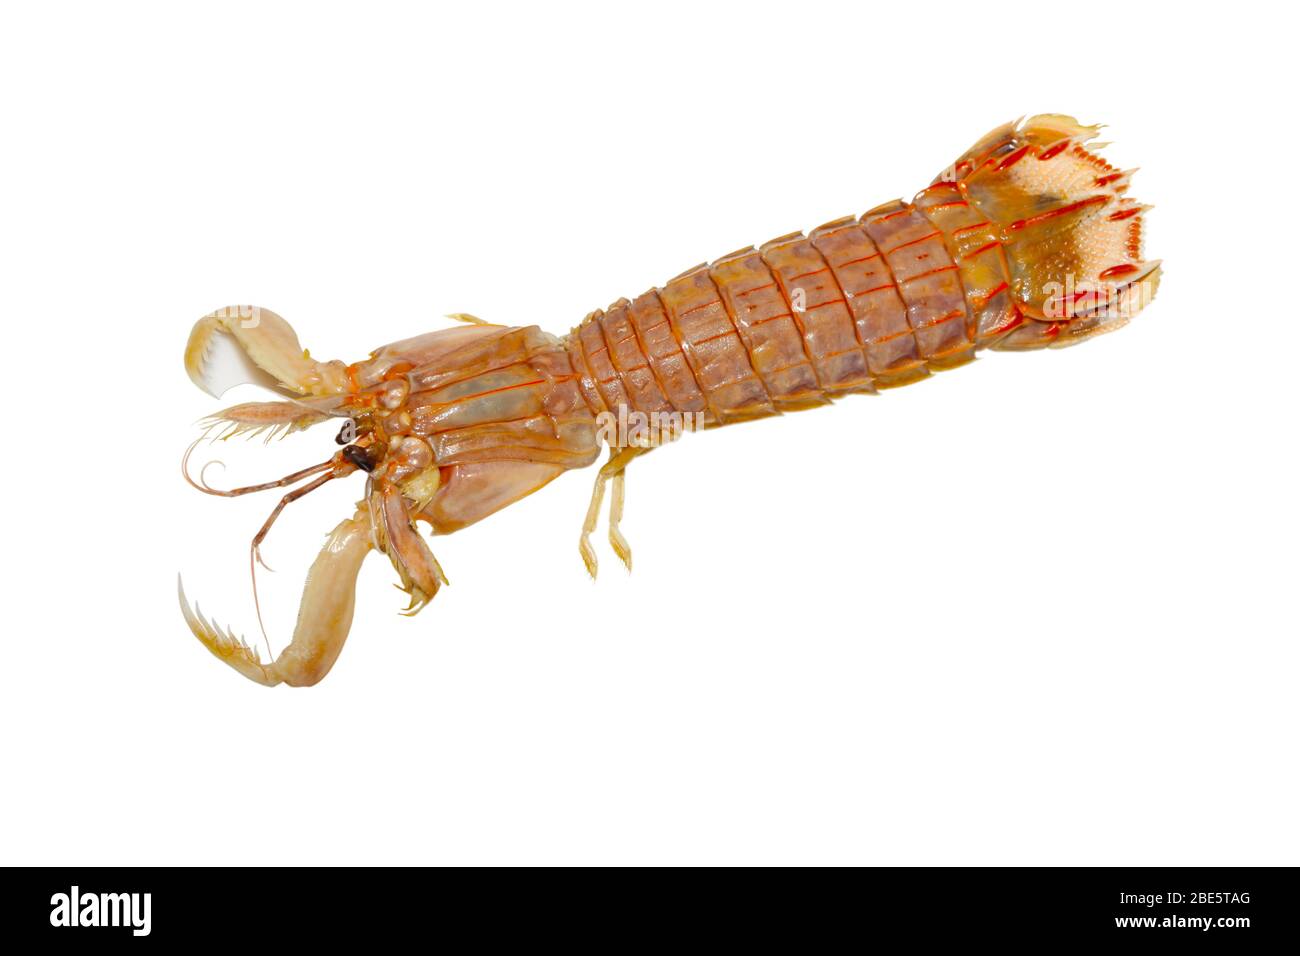 gros plan de crevettes mantis, une sorte de vie marine, peut être comestible, délicieux. Prises de photos conditions d'éclairage intérieur. Banque D'Images